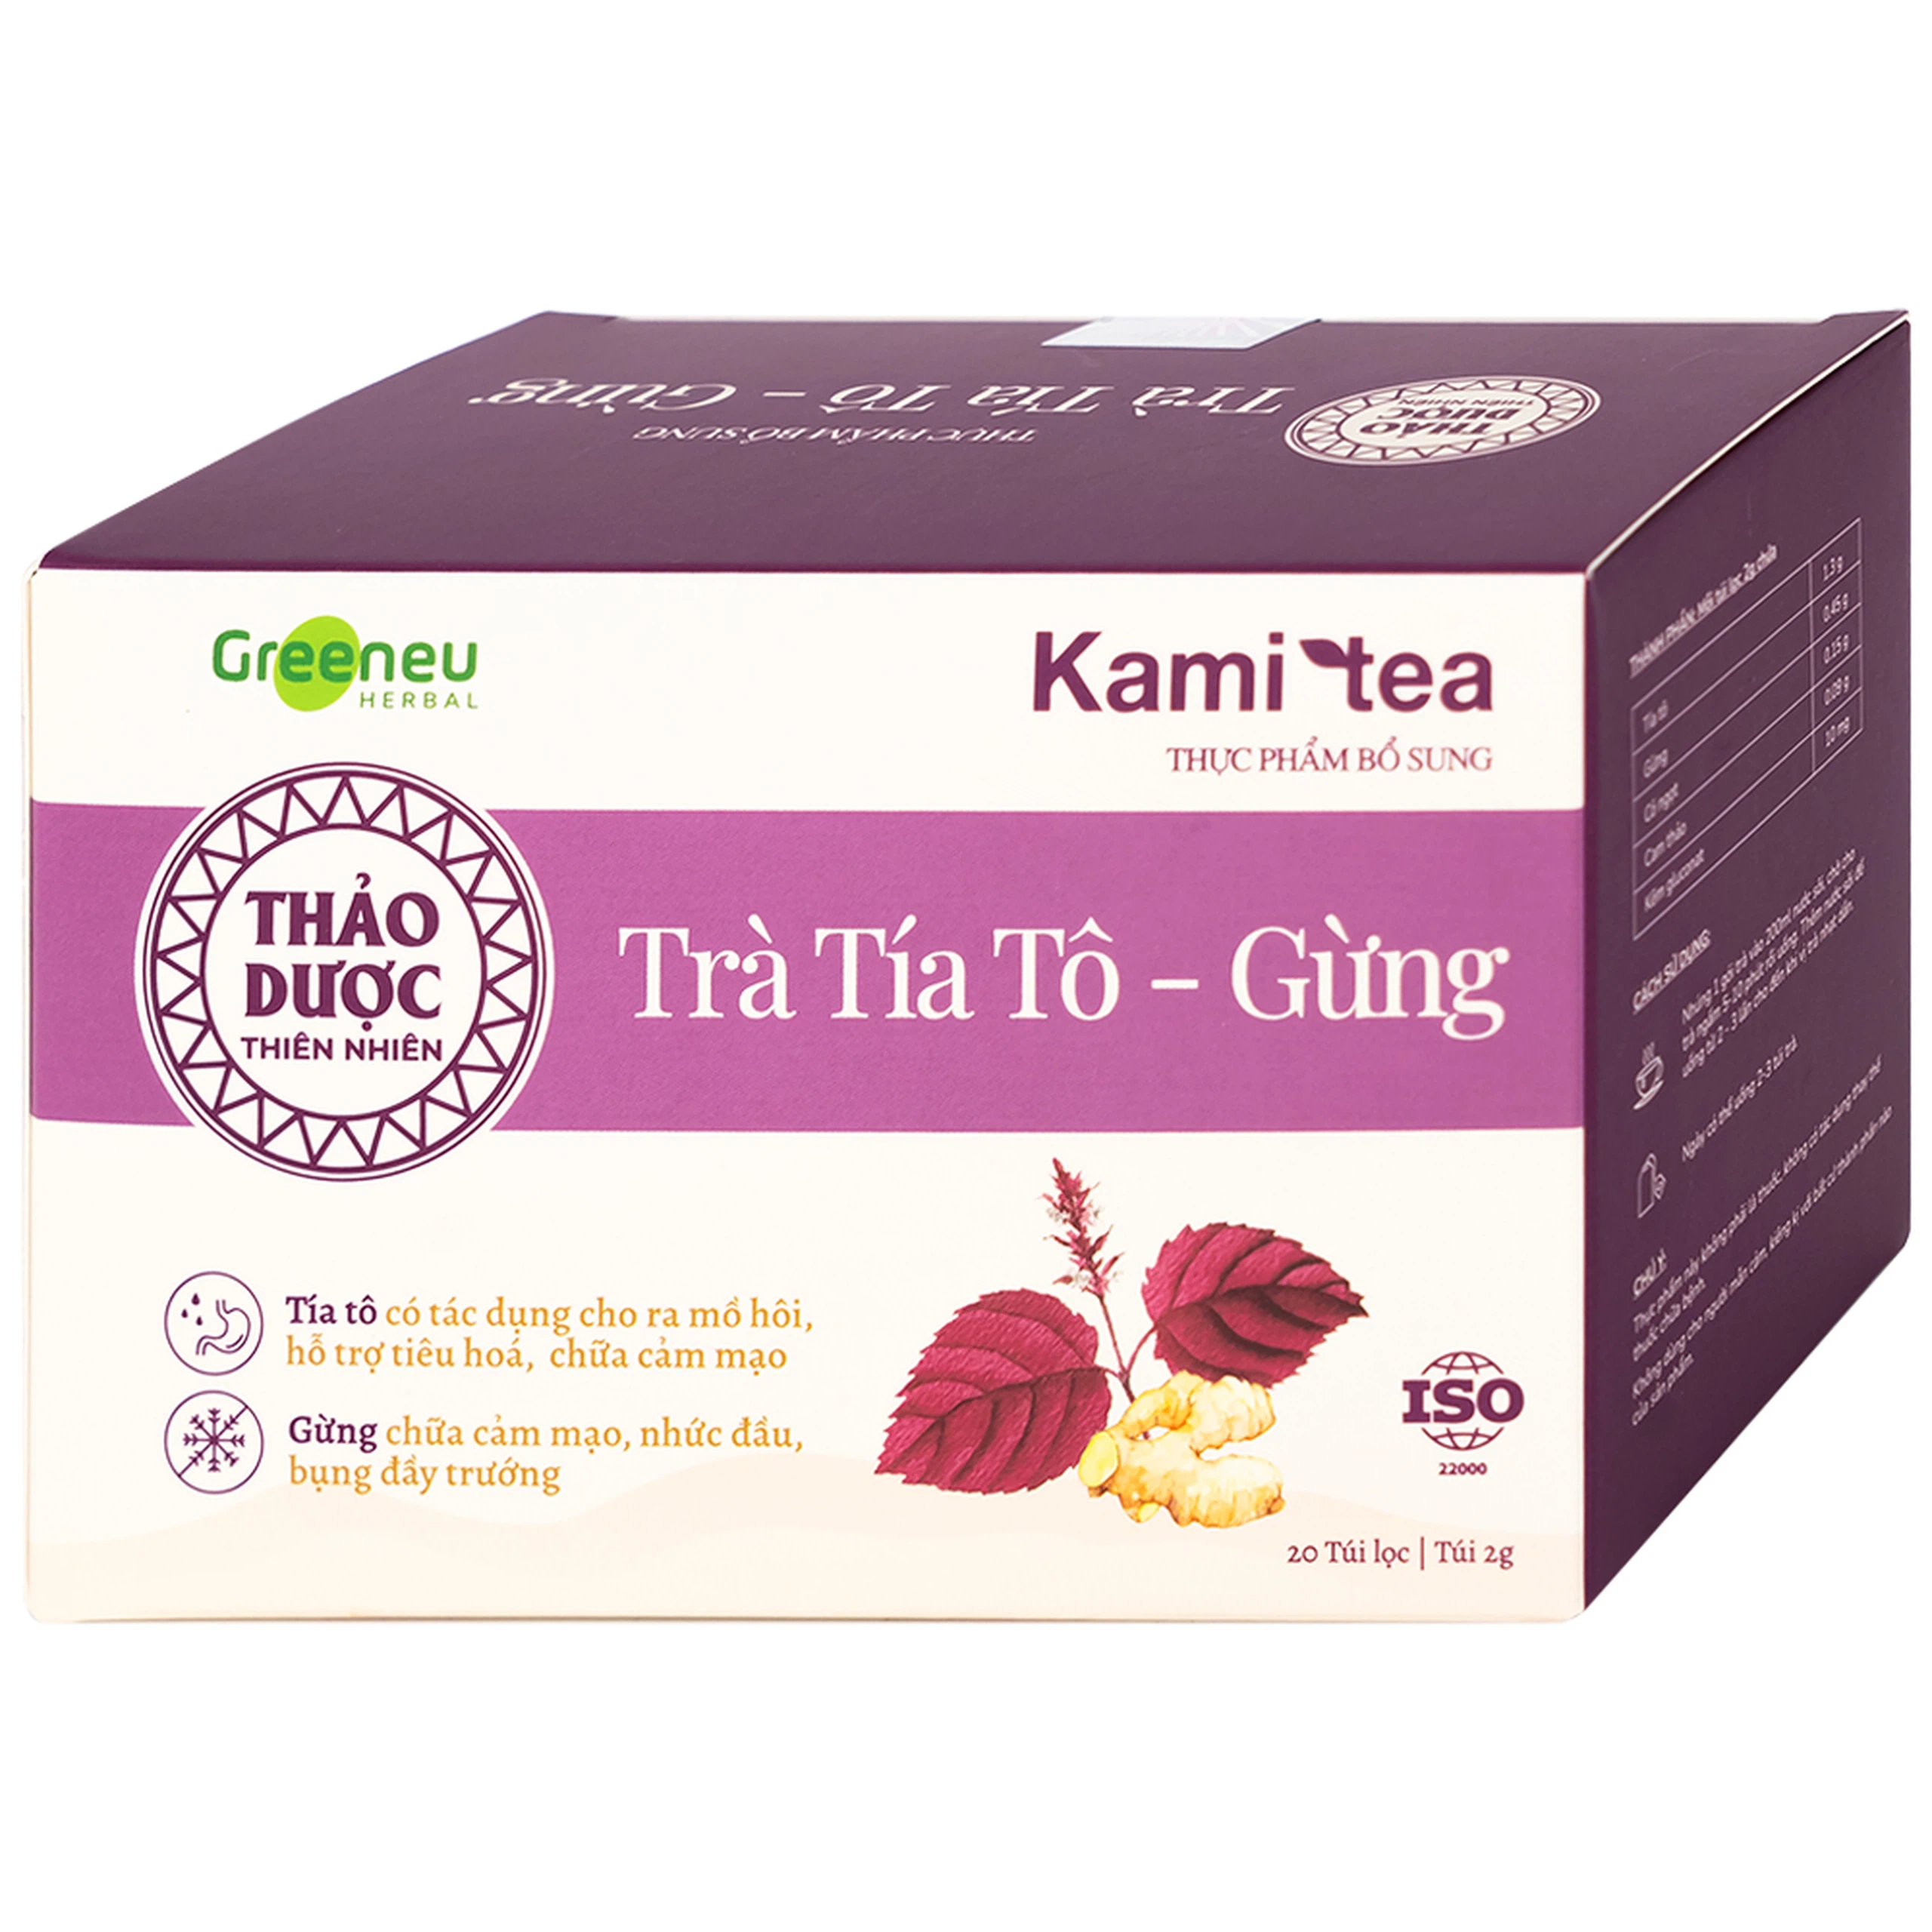 Trà Tía Tô – Gừng Kami Tea hỗ trợ tiêu hoá, chữa cảm mạo, nhức đầu, bụng dầy trướng (20 túi)